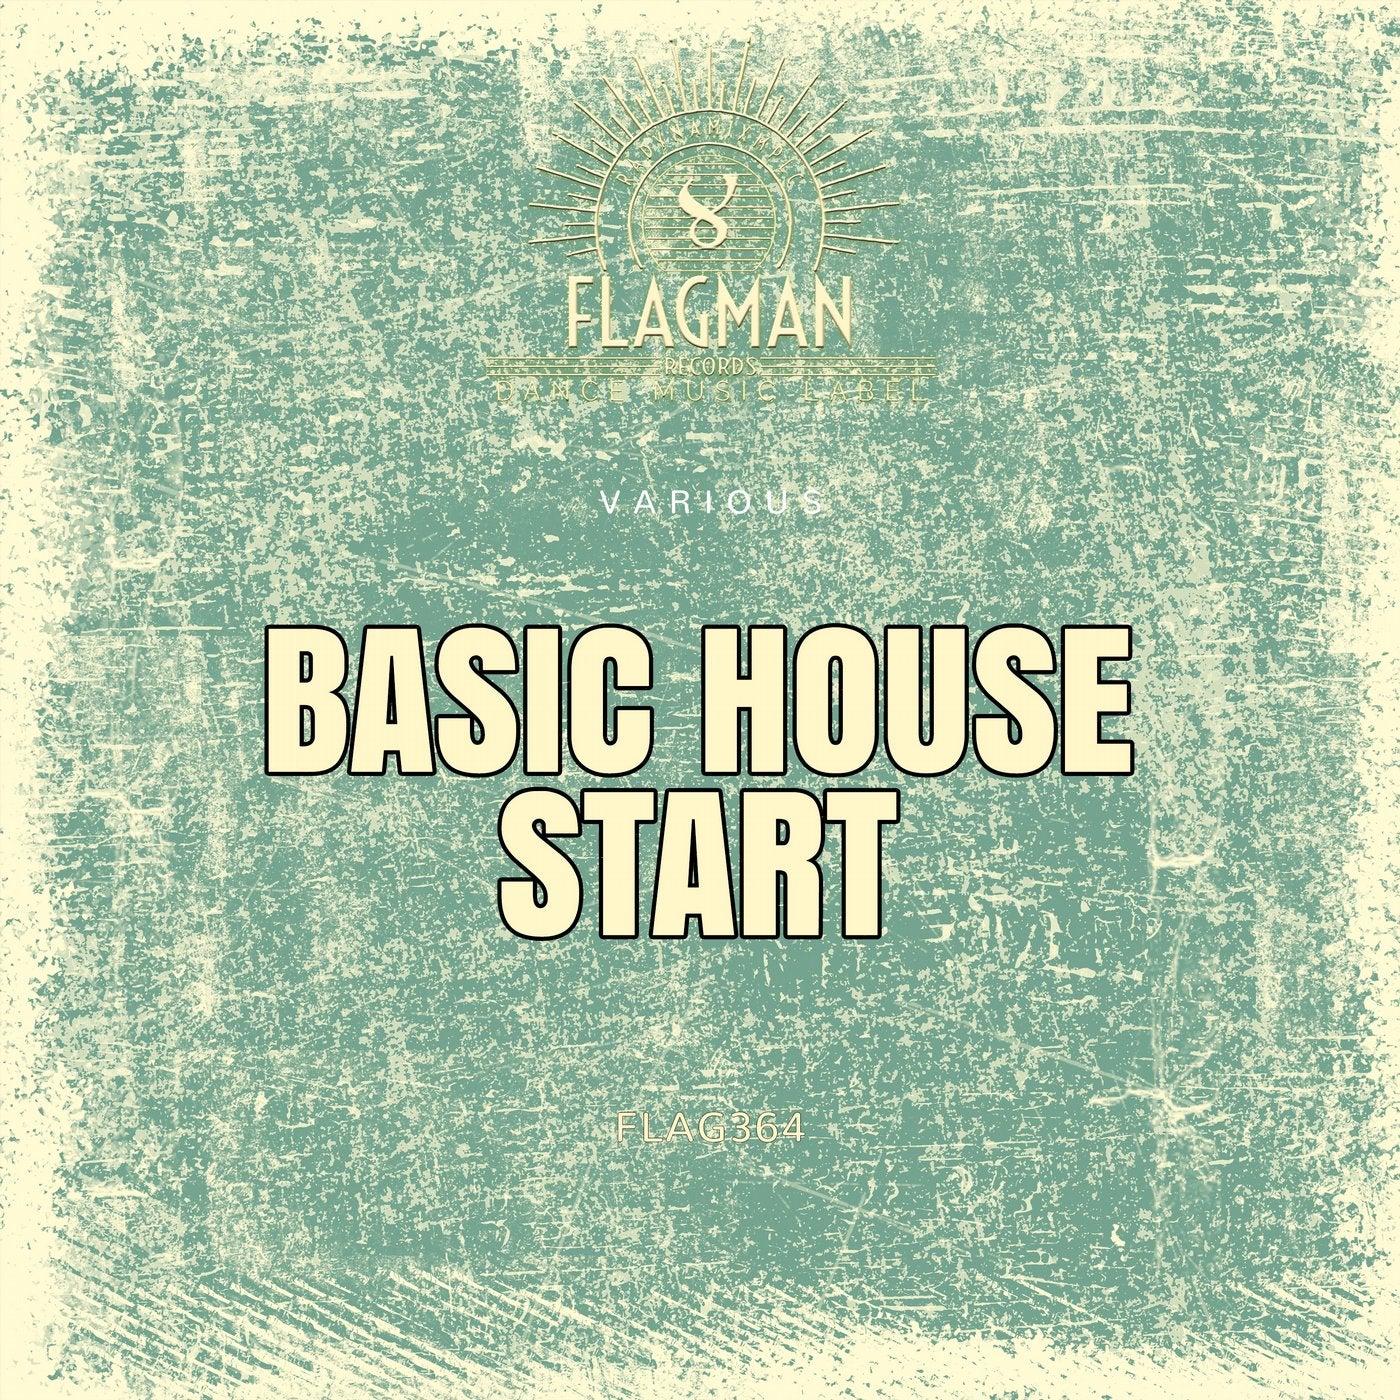 Basic House Start